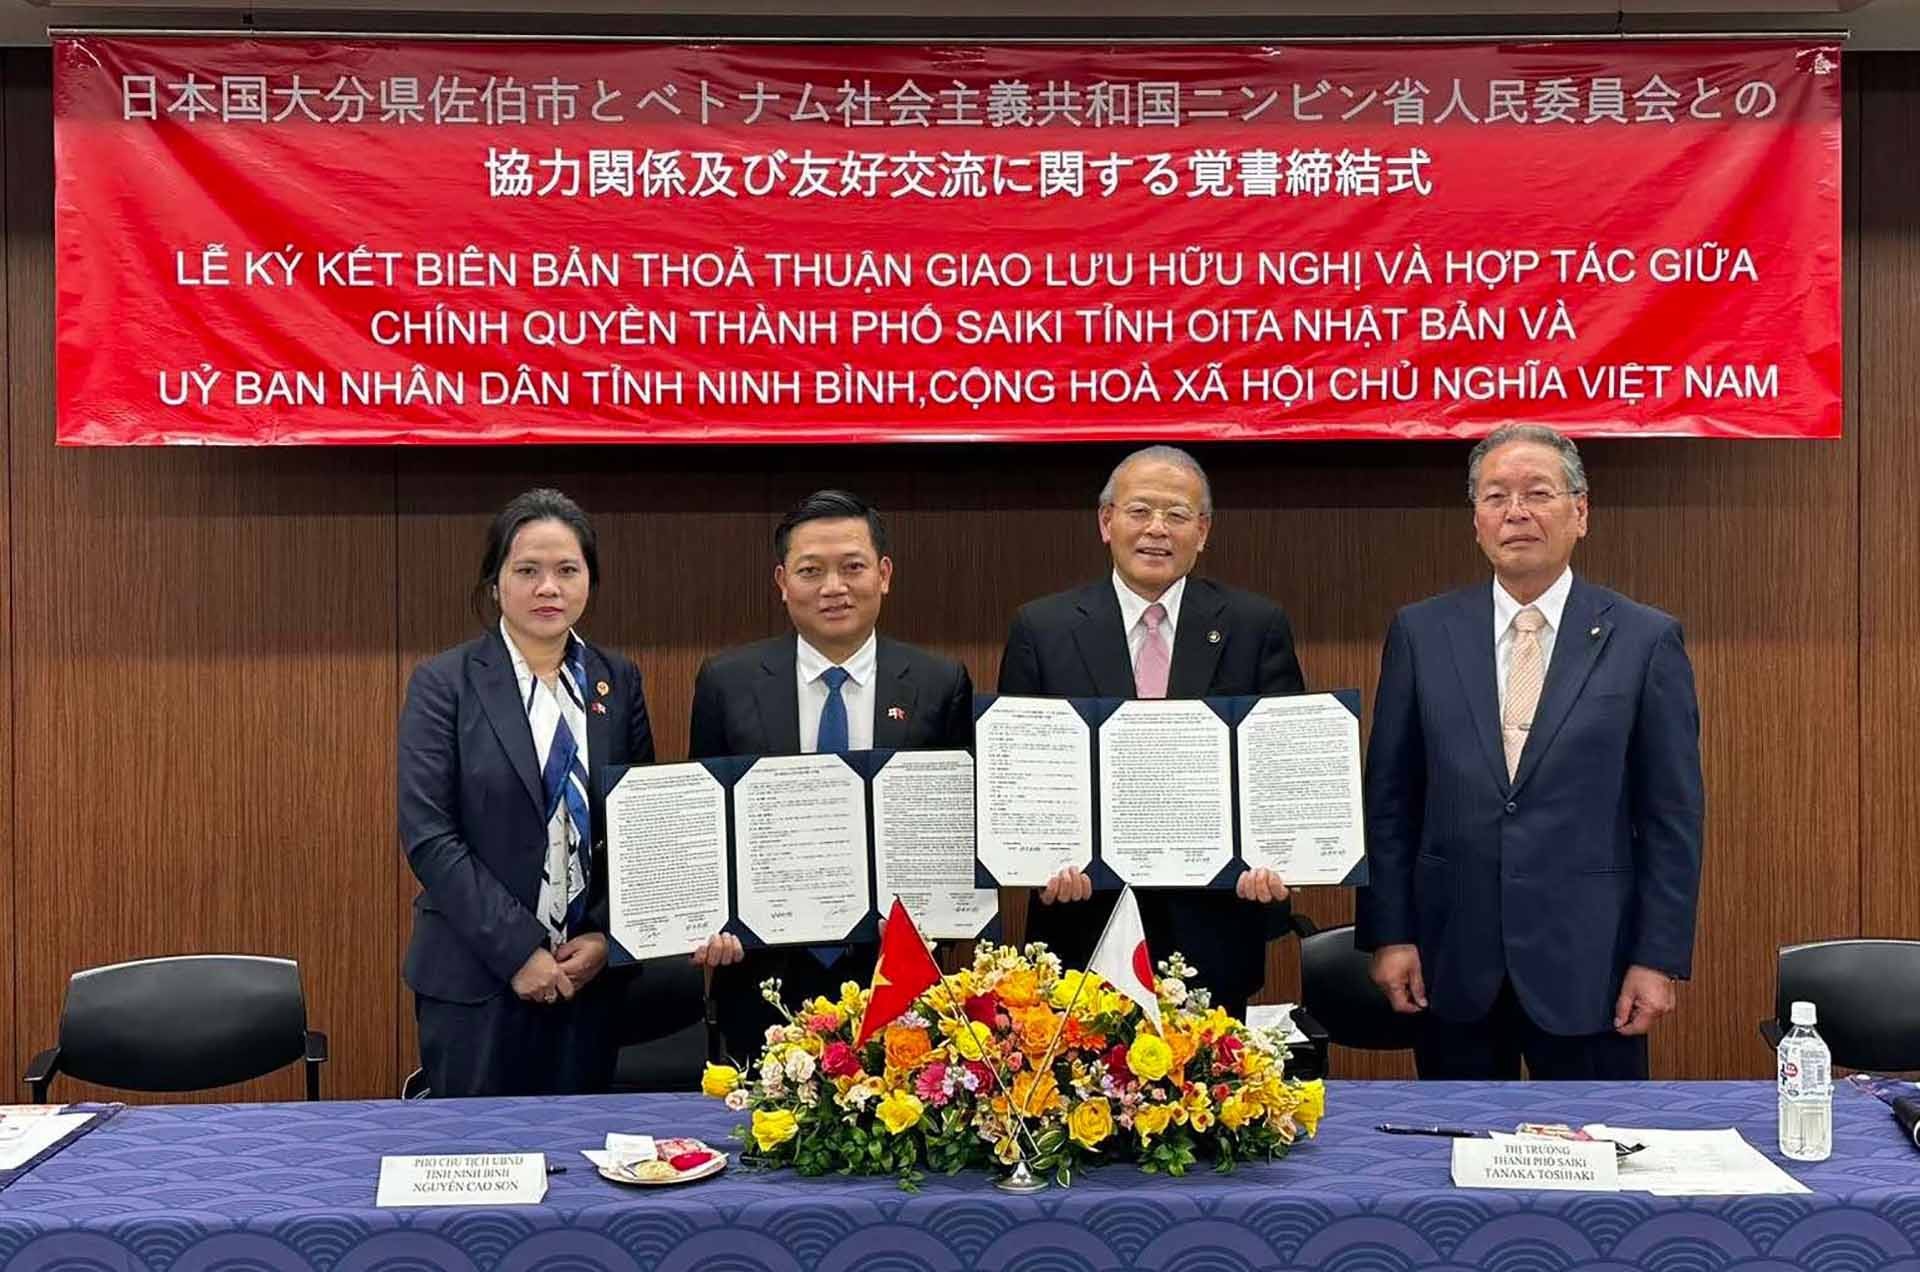 Tỉnh Ninh Bình và thành phố Saiki (Nhật Bản) ký kết biên bản ghi nhớ hợp tác giao lưu hữu nghị